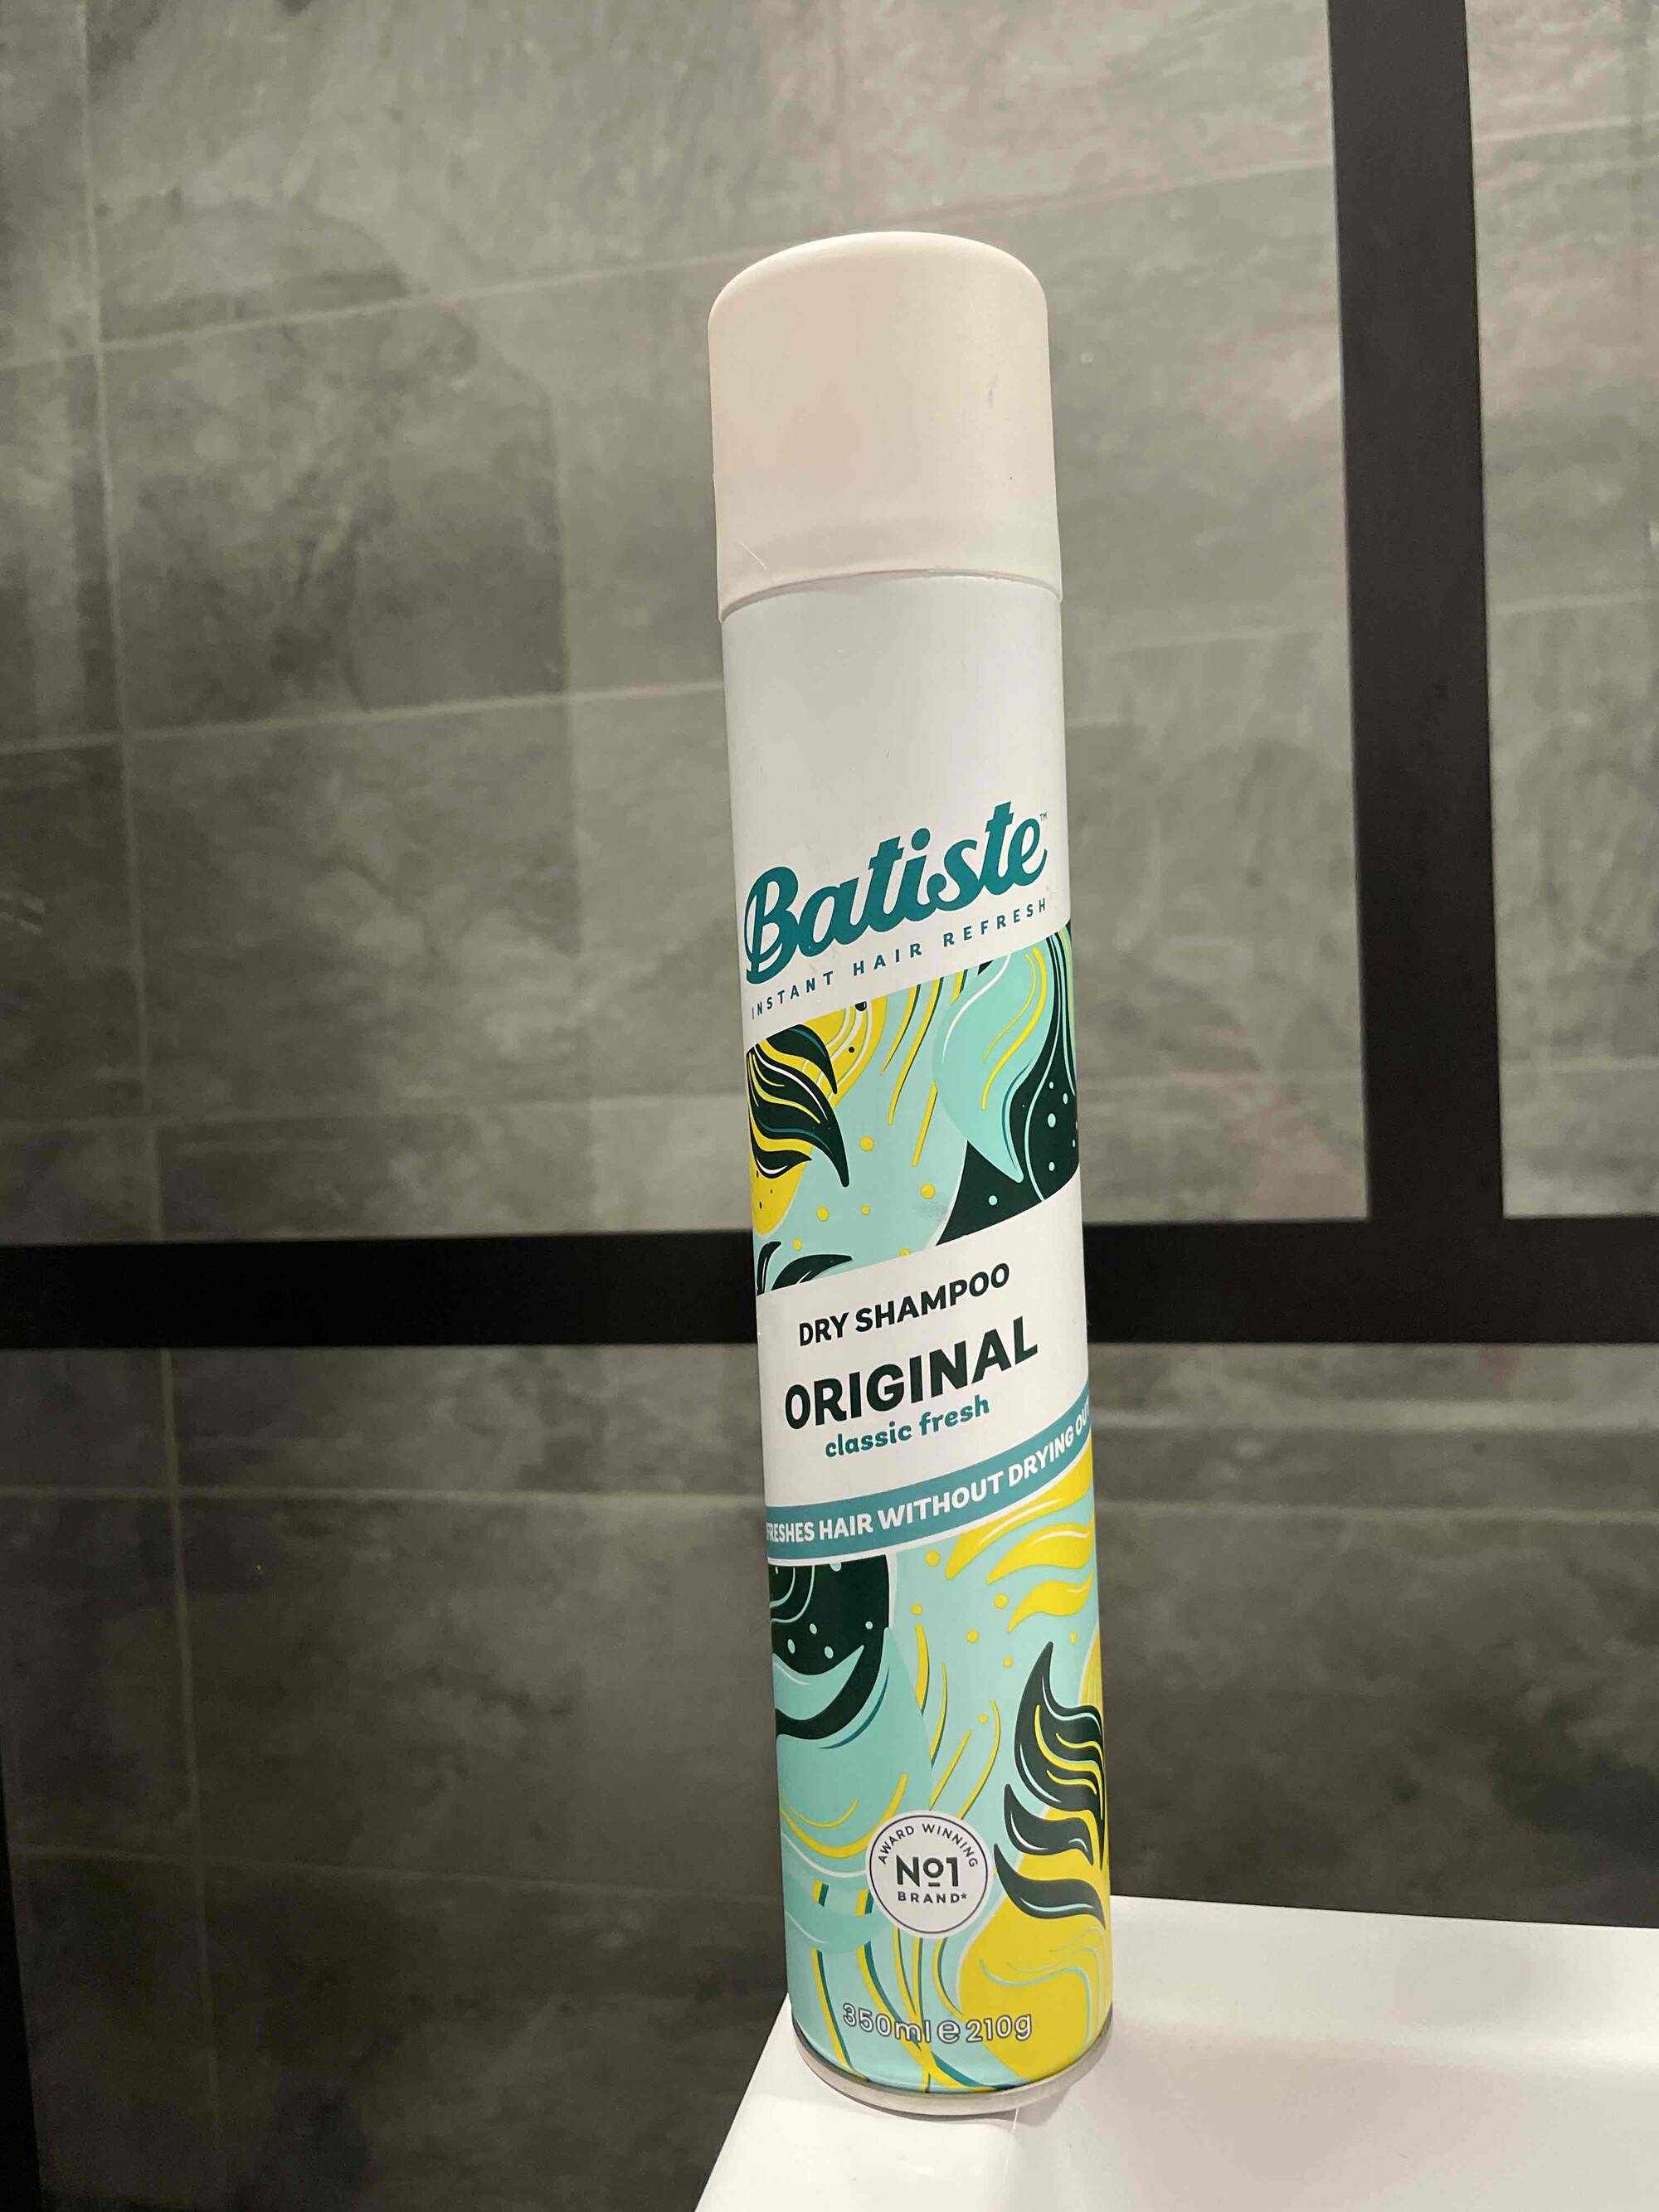 BATISTE - Dry shampoo original classic fresh